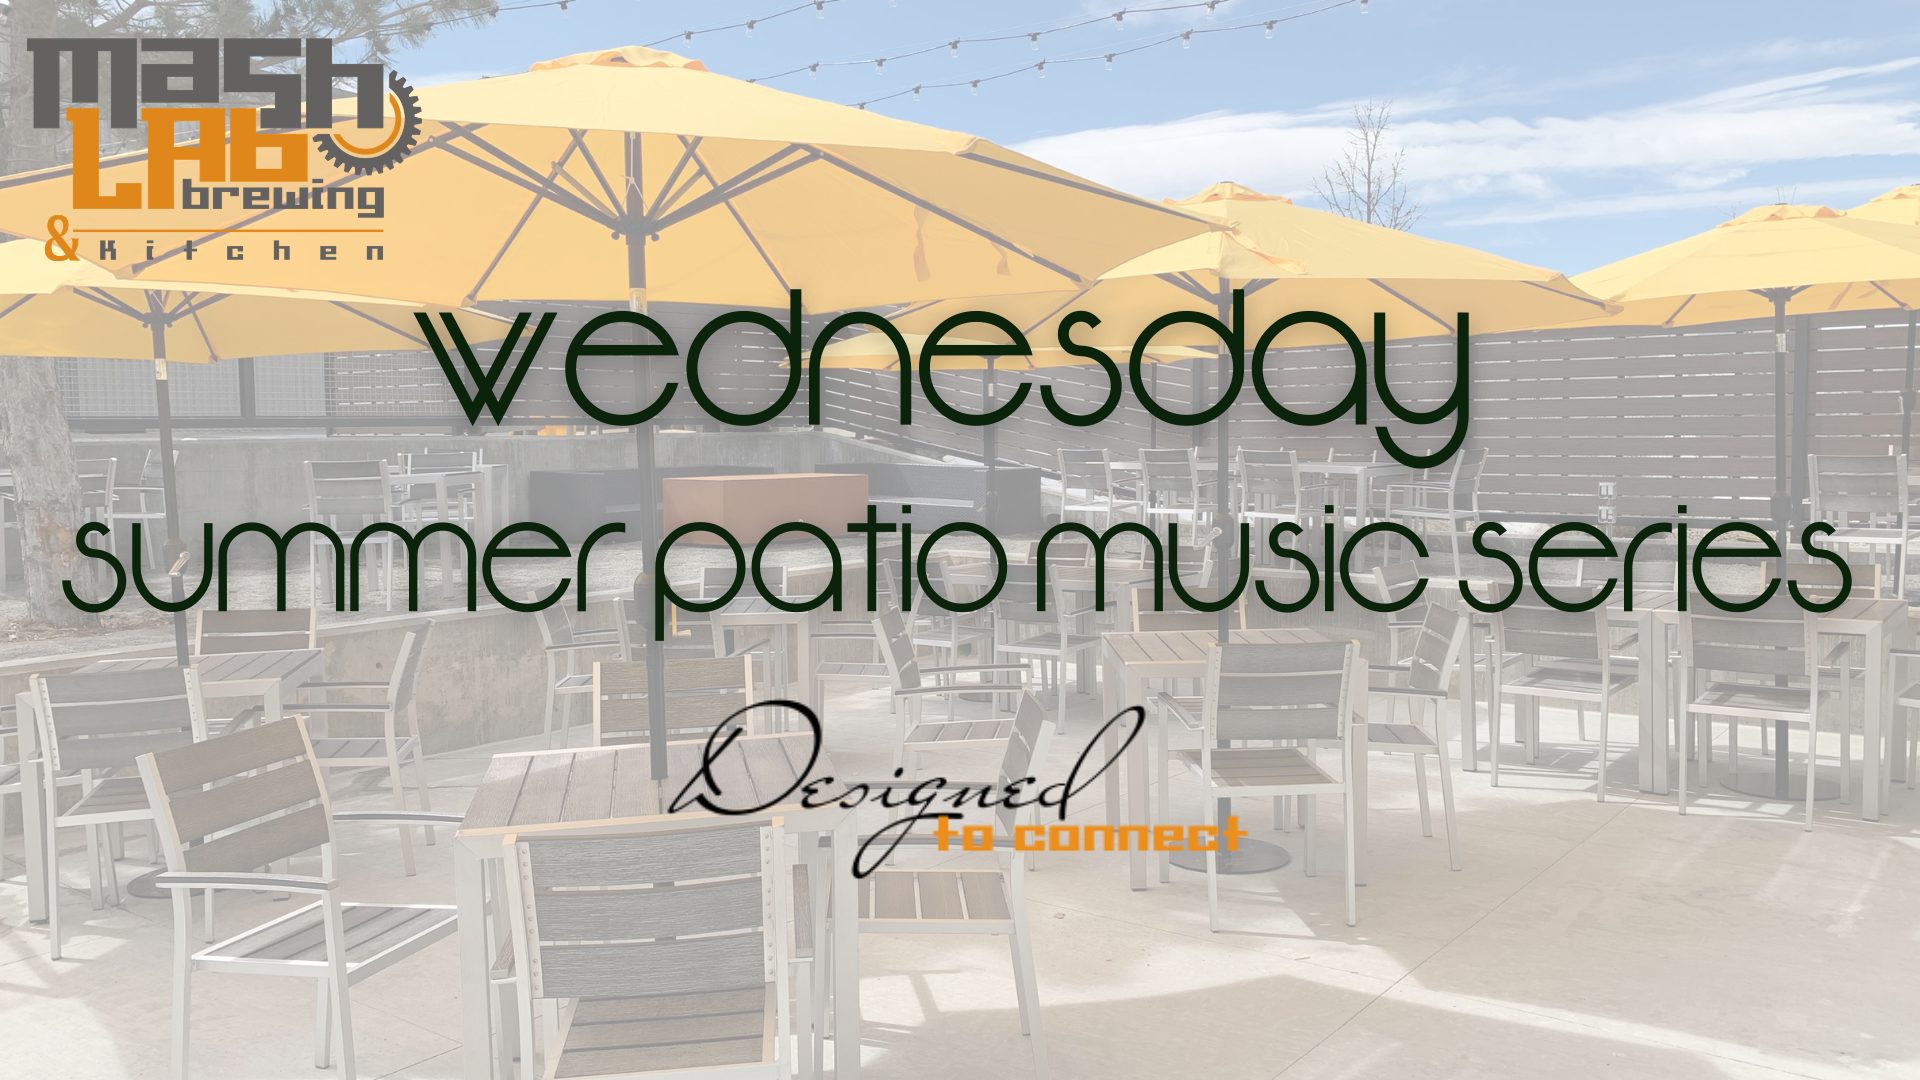 Wednesday summer patio music series